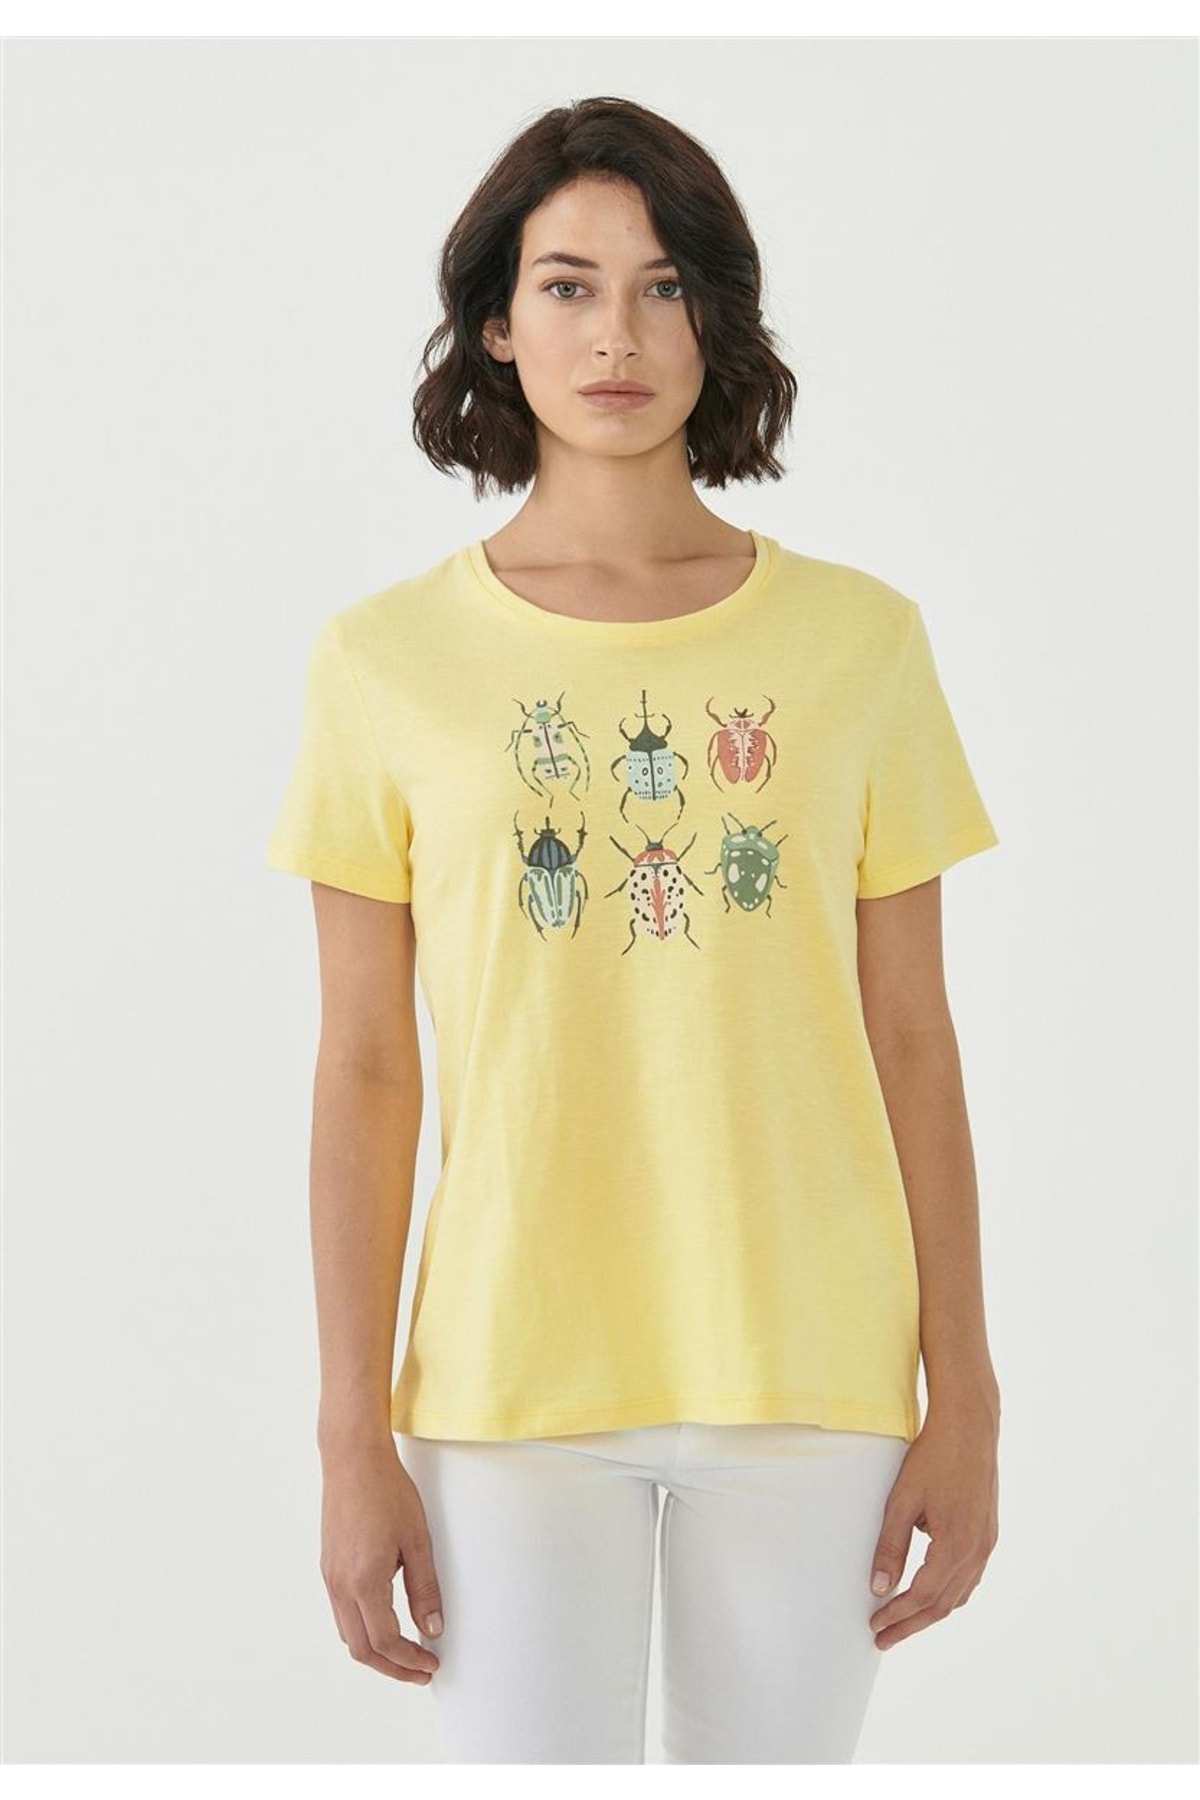 ORGANICATION T-Shirt Gelb Figurbetont Fast ausverkauft